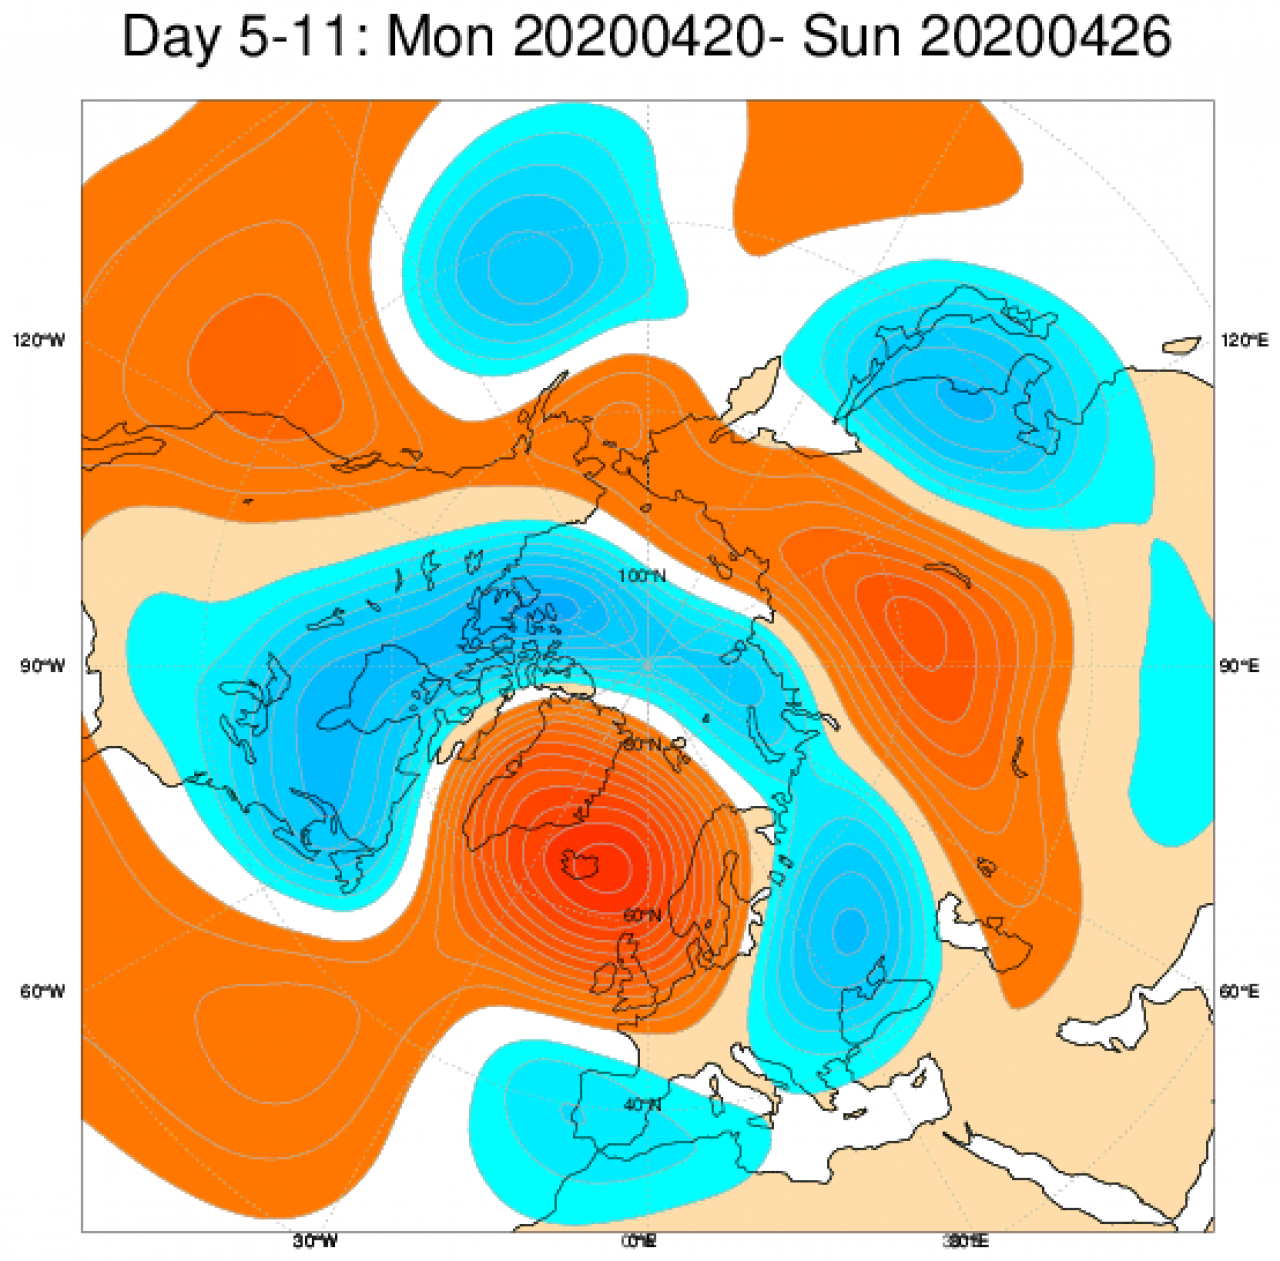 Le anomalie di geopotenziale attese nel periodo 20-26 aprile secondo il modello ECMWF